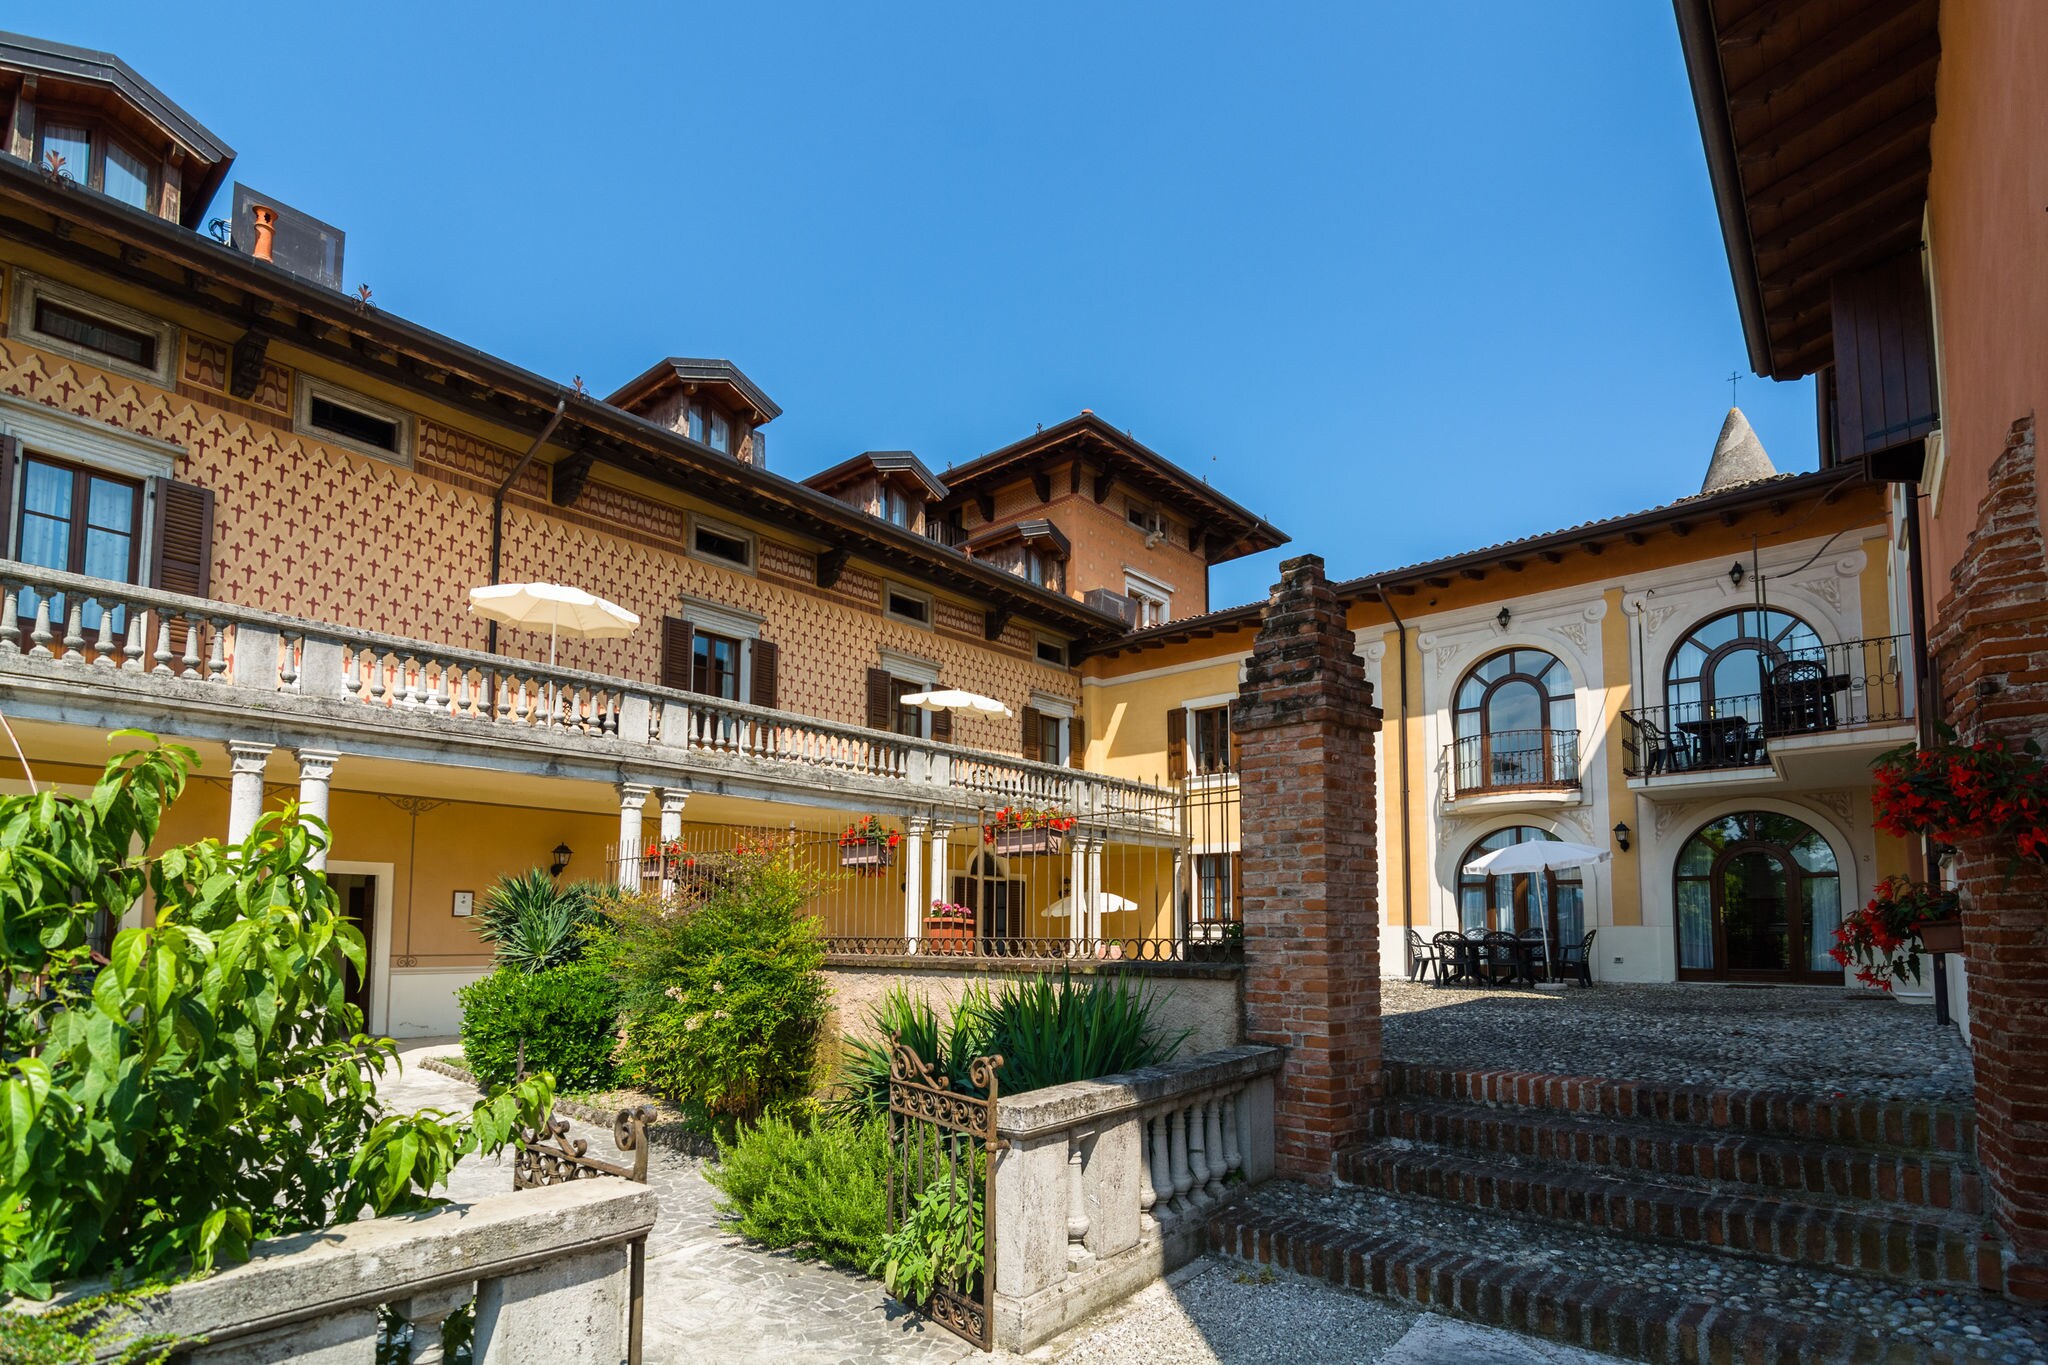 Ferienhaus in Manerba del Garda in der Nähe des Gardasees